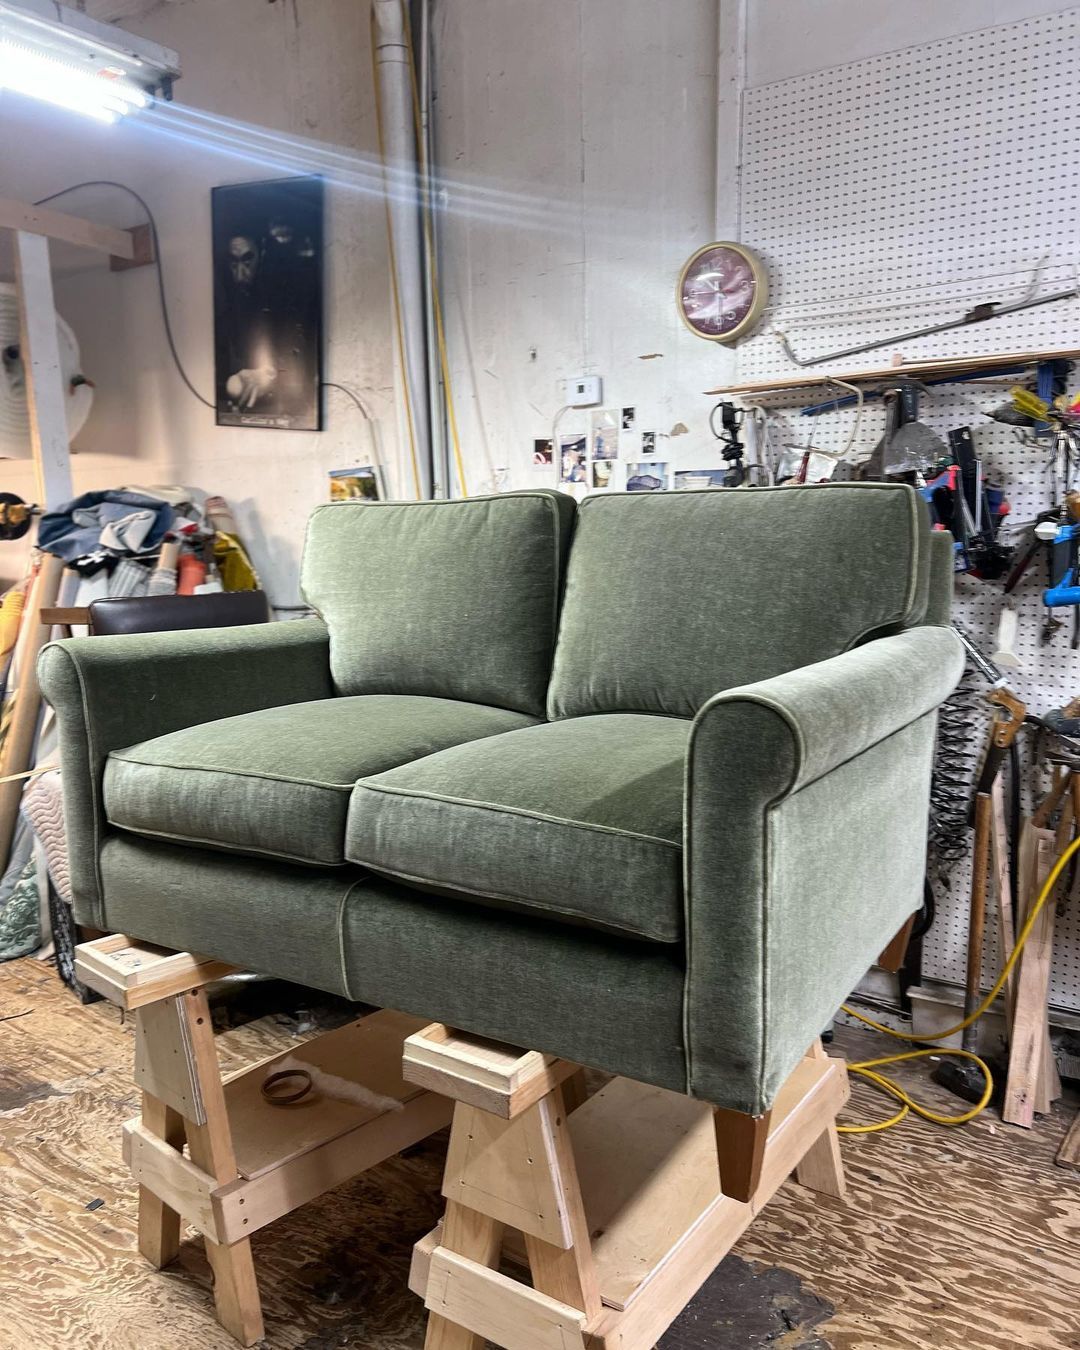 Реставрация Перетяжка, и изготовление мягкой (дивана) и твердый мебели